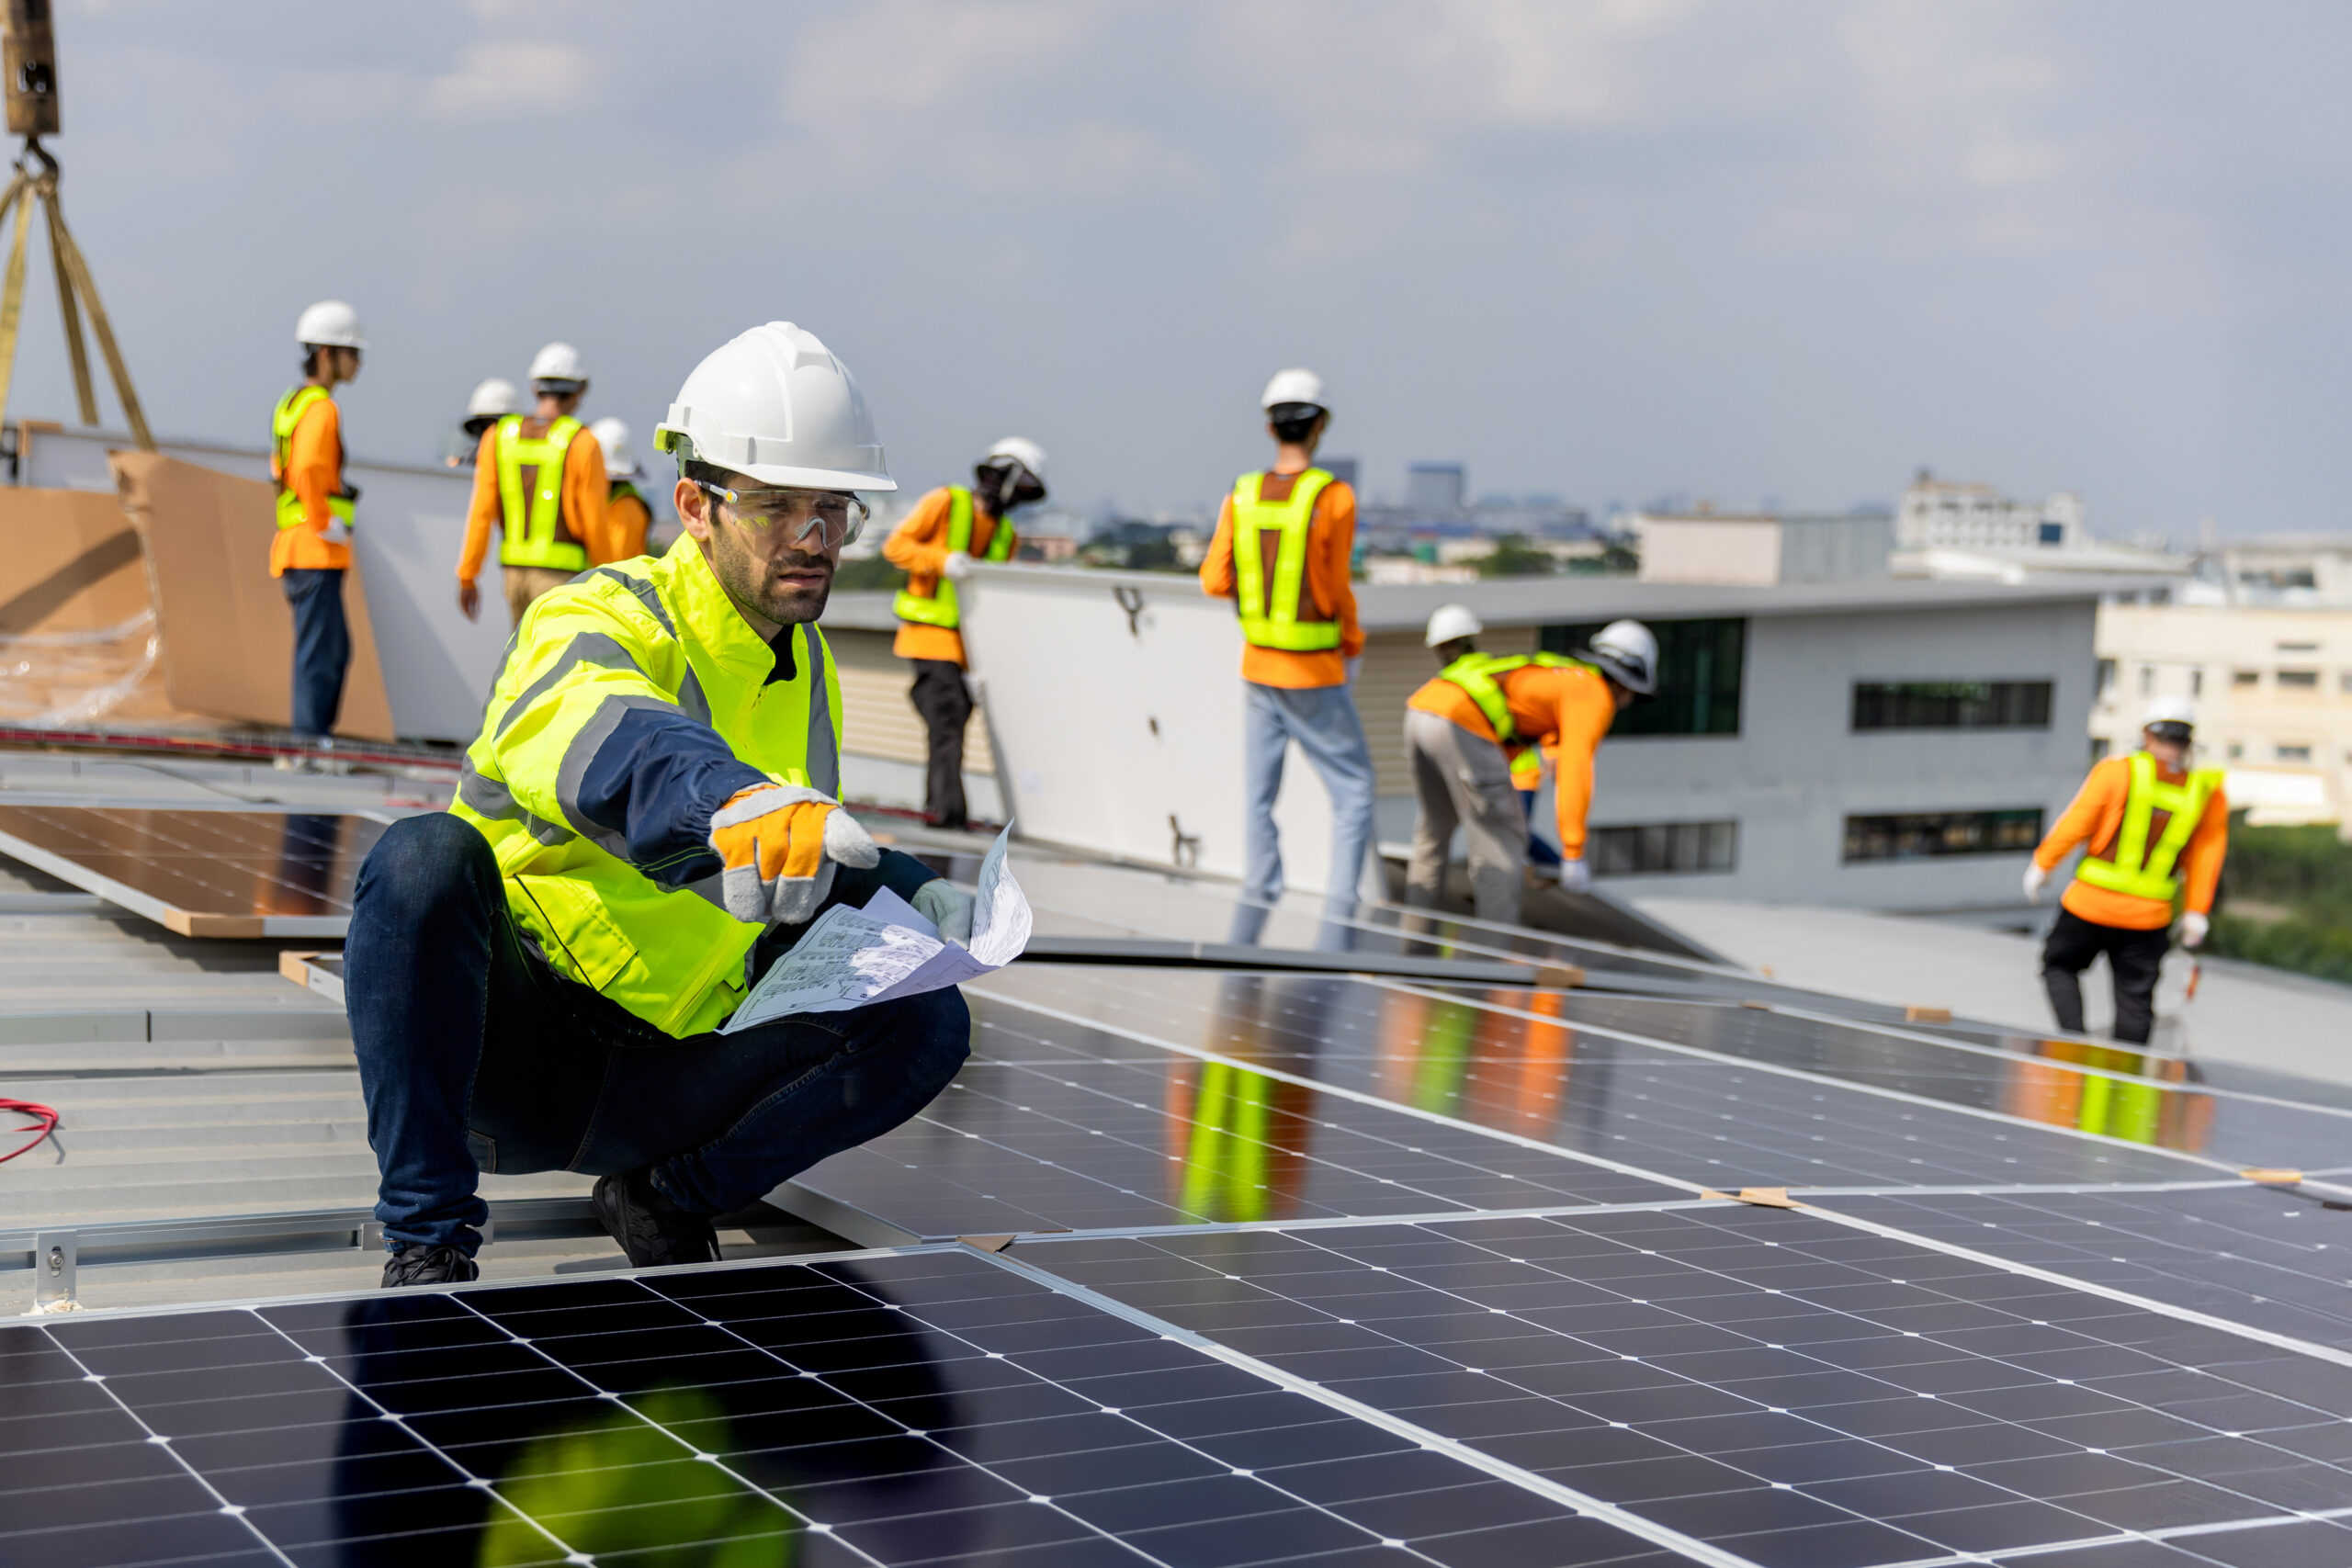 Renewable Energy Job Growth